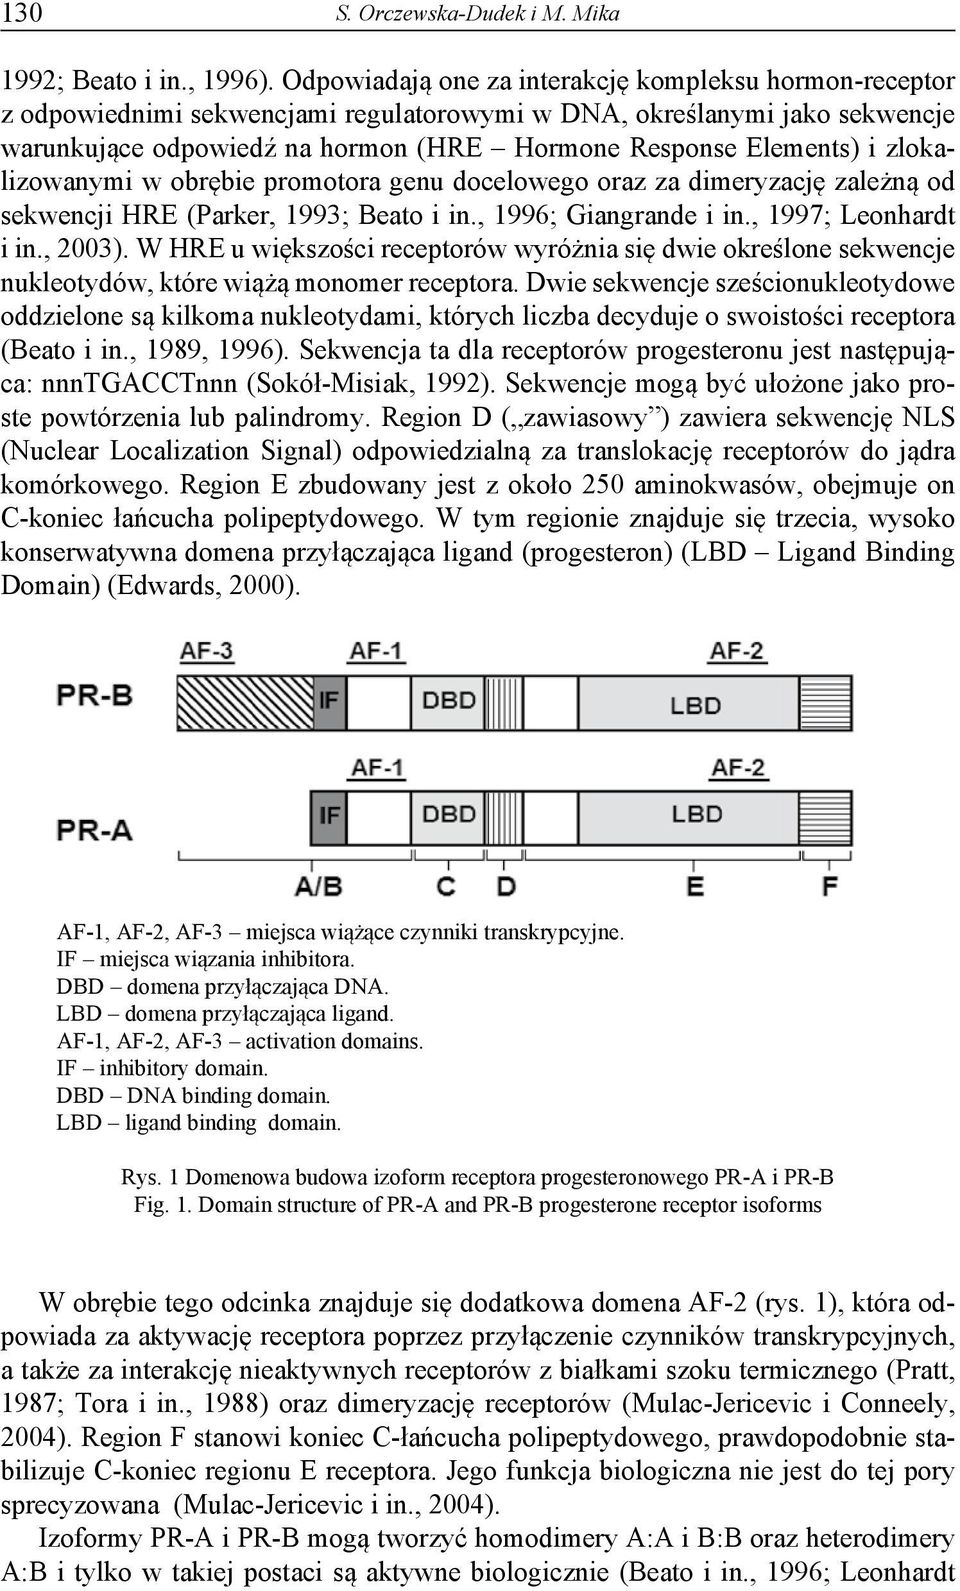 zlokalizowanymi w obrębie promotora genu docelowego oraz za dimeryzację zależną od sekwencji HRE (Parker, 1993; Beato i in., 1996; Giangrande i in., 1997; Leonhardt i in., 2003).